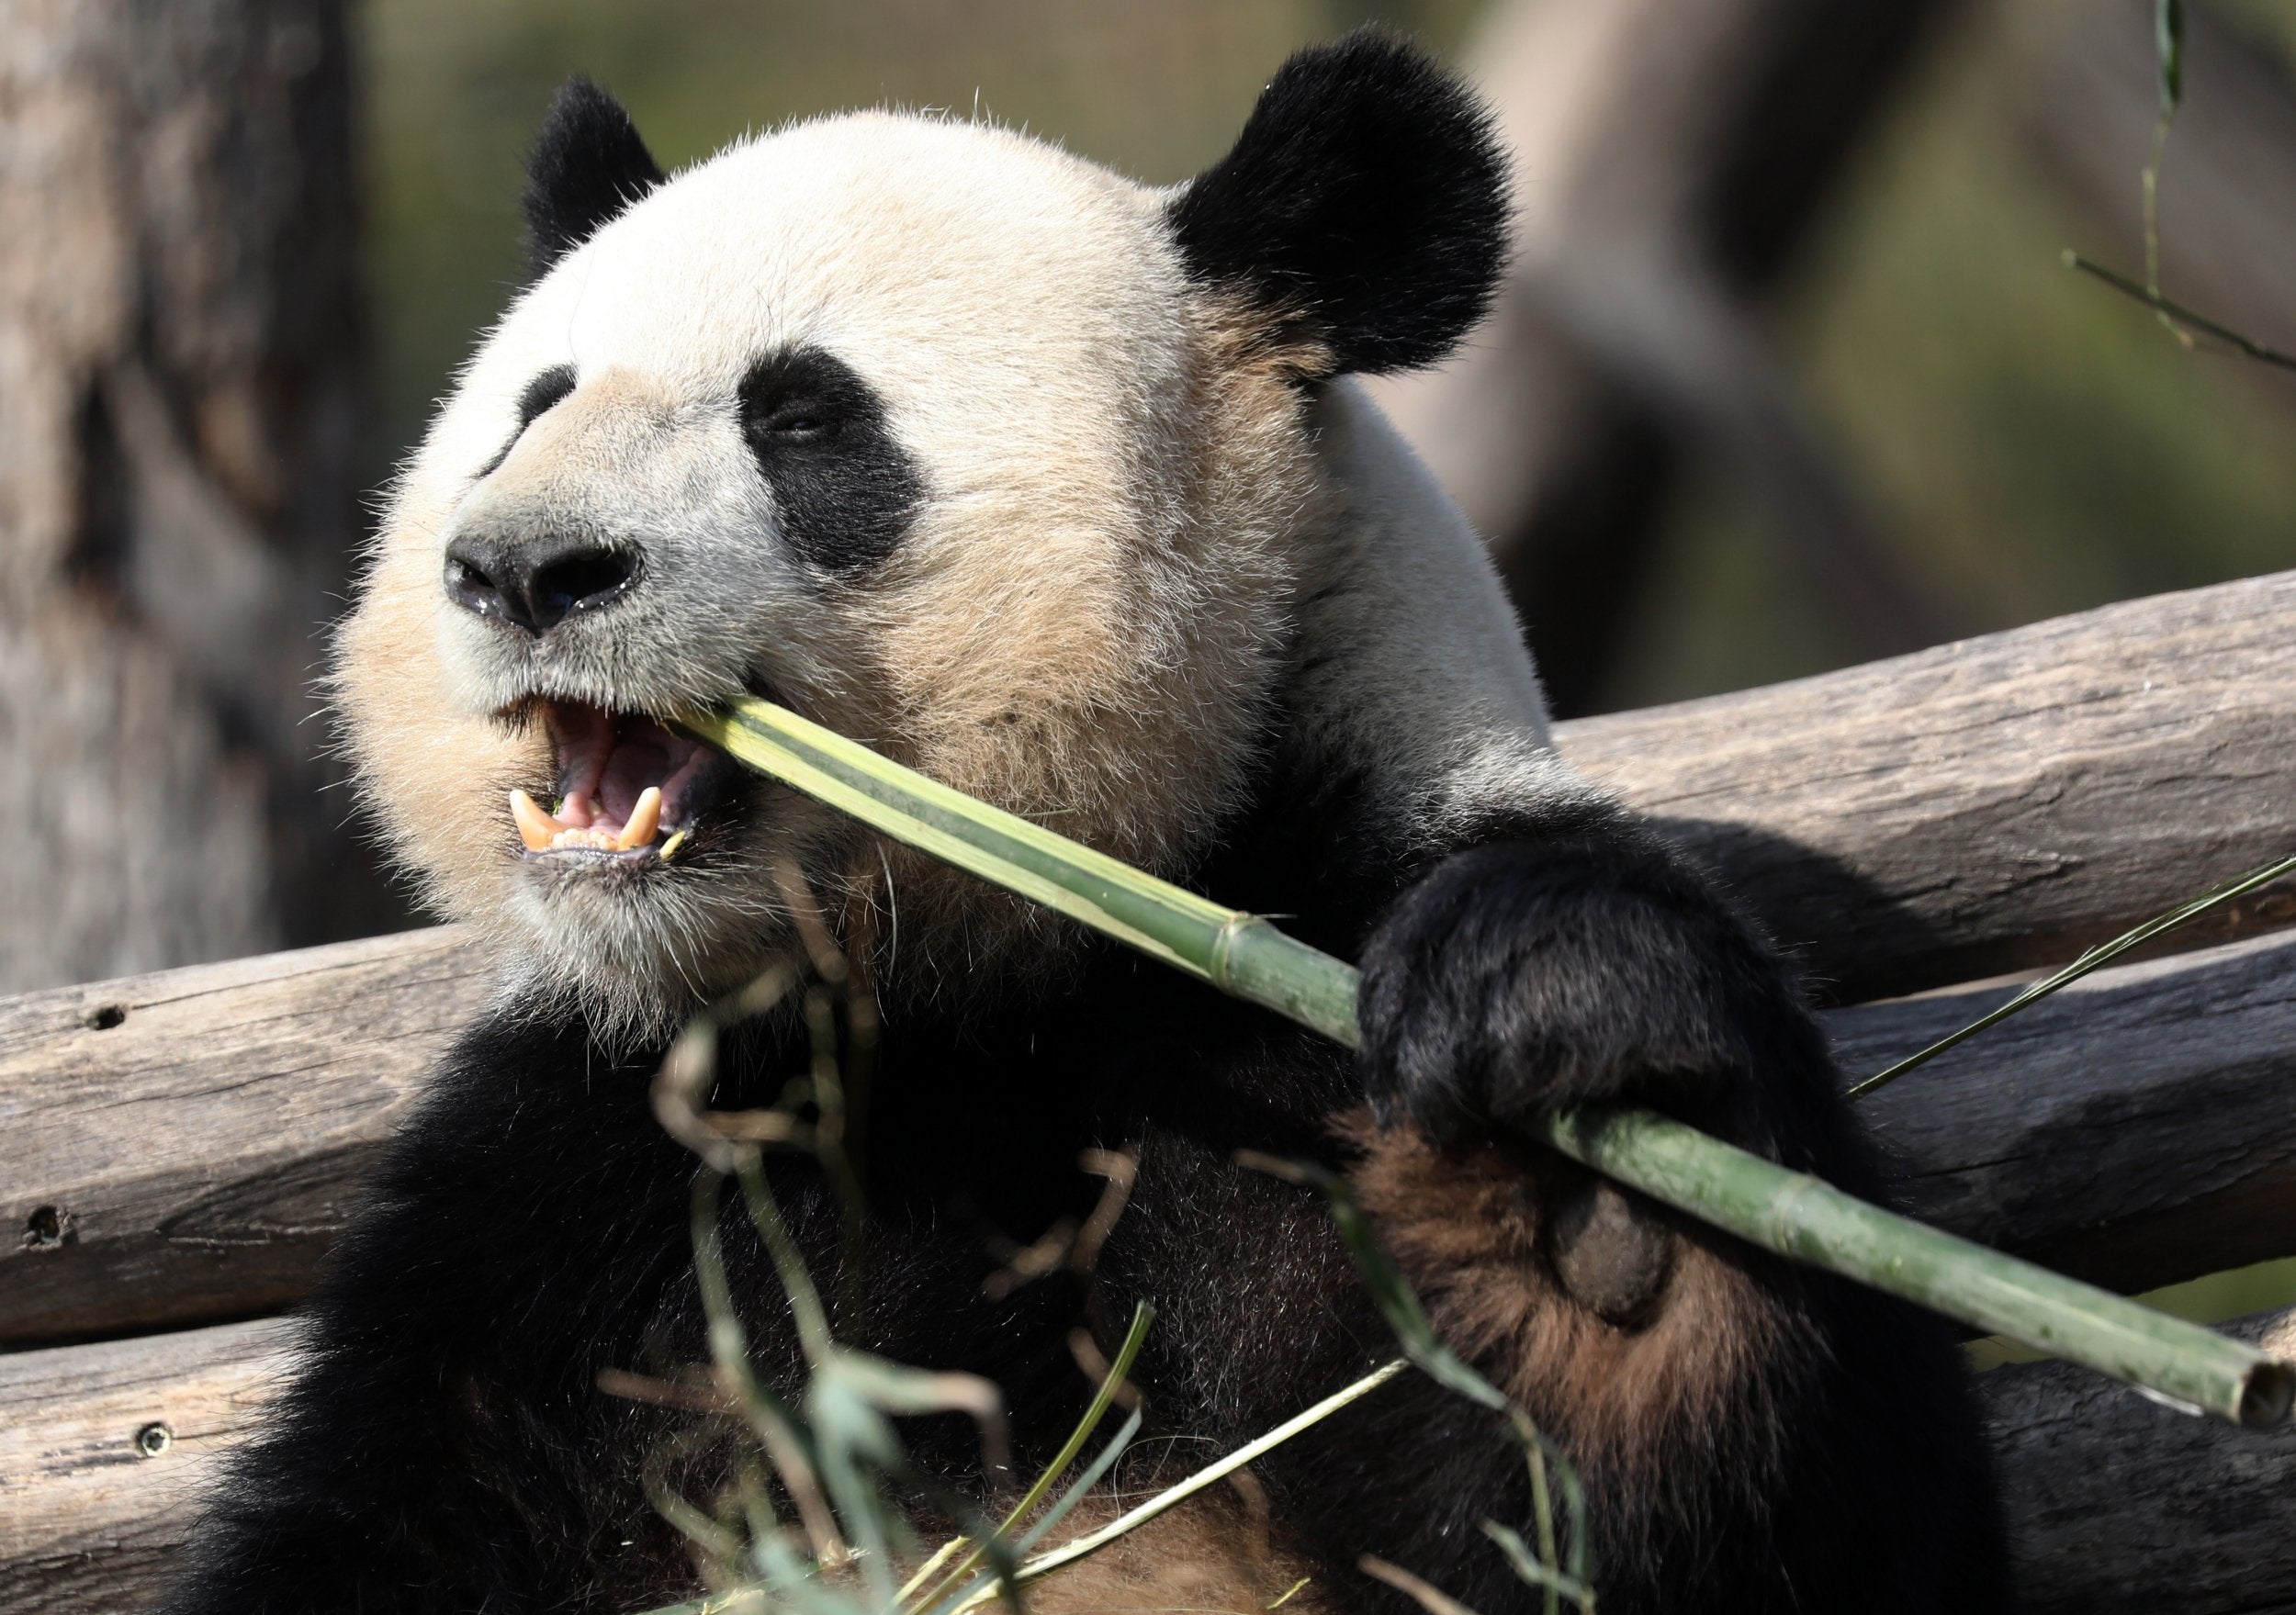 Male giant panda Jiao Qing tucking into the bamboo at Berlin Zoo